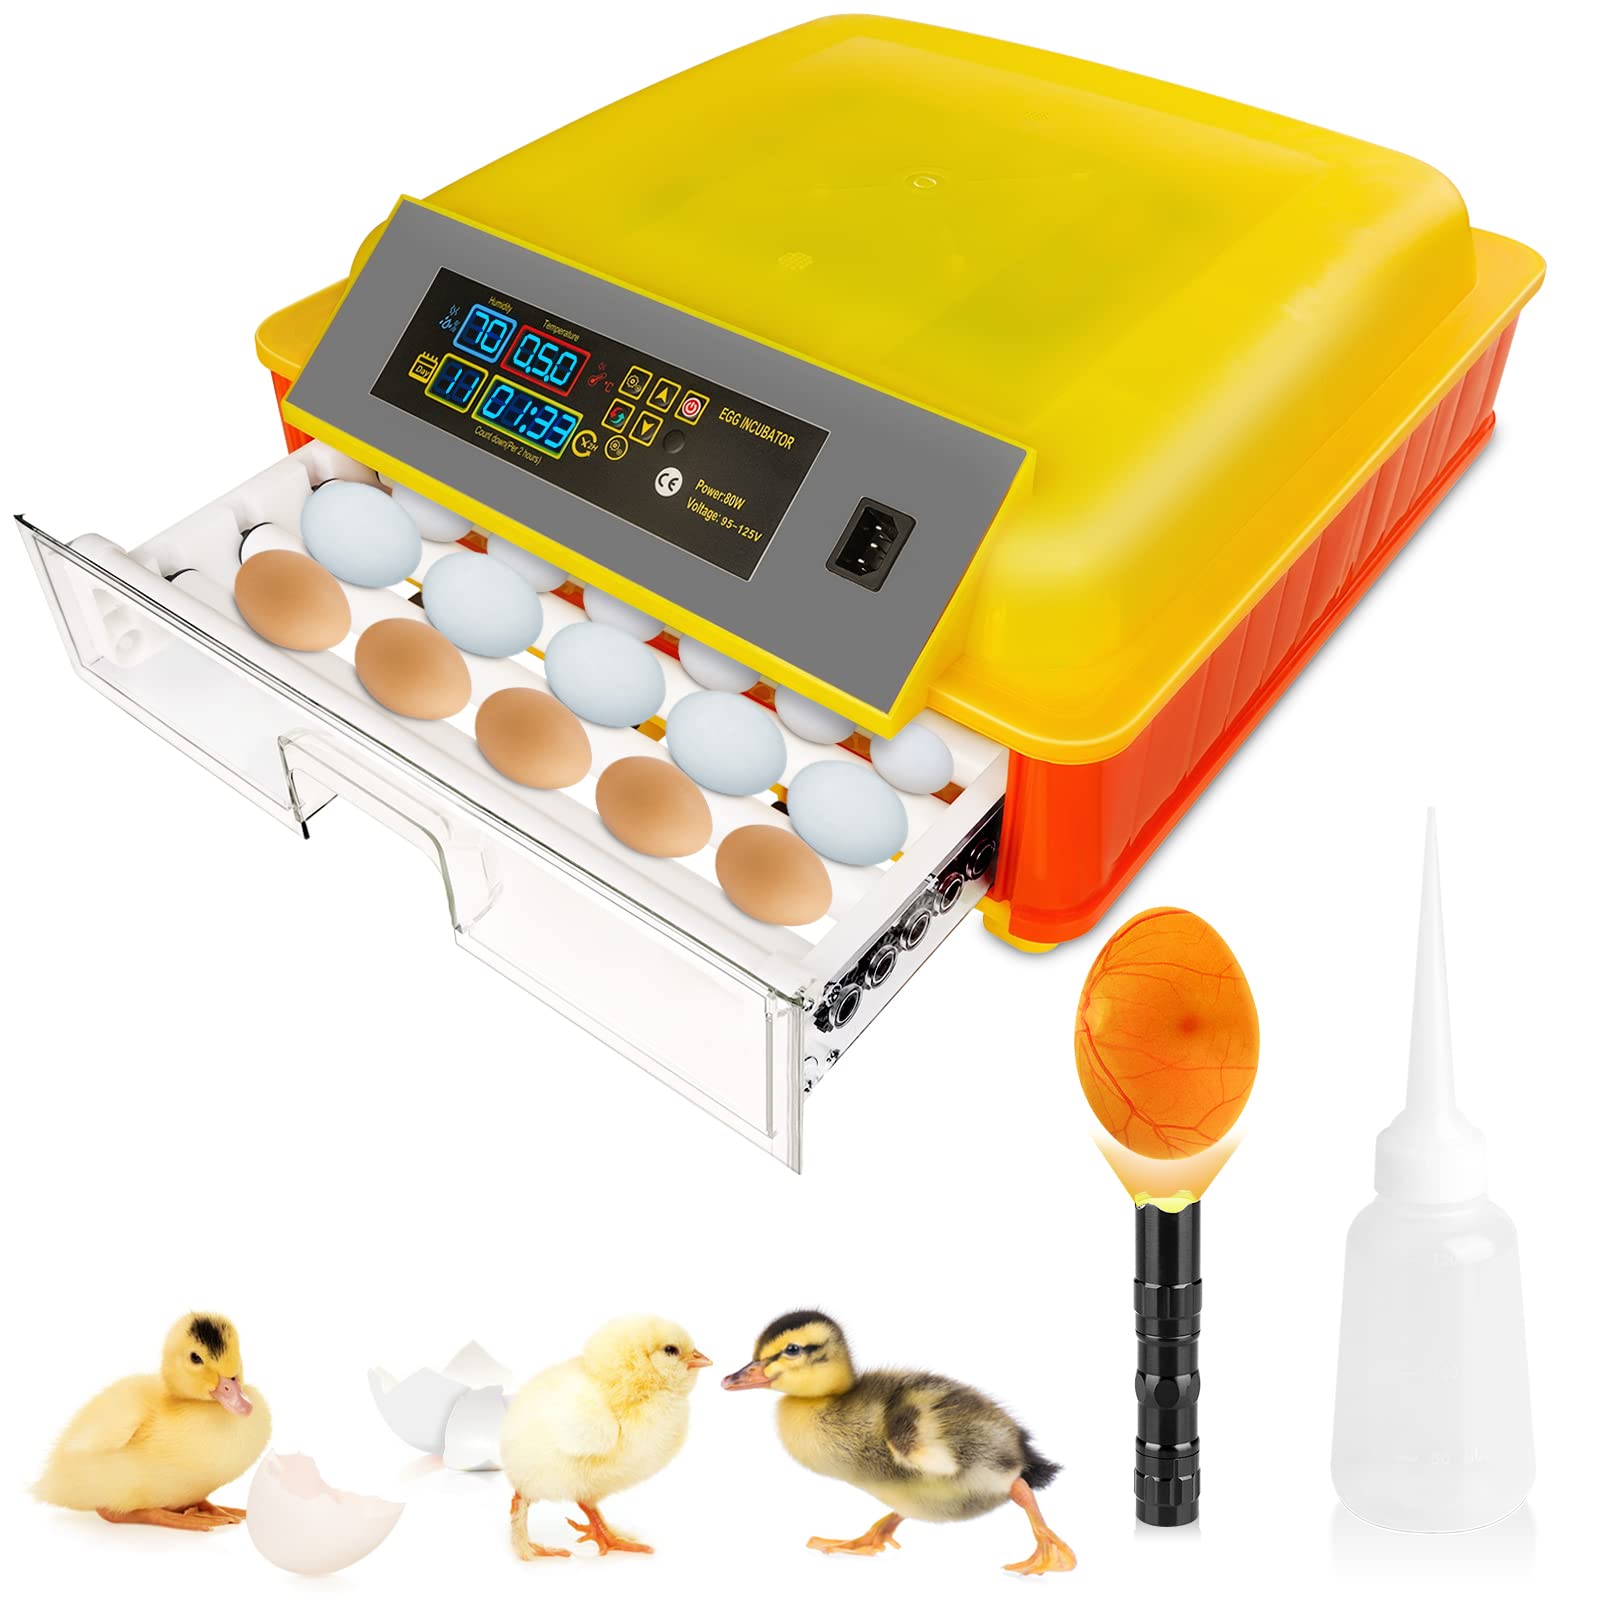 Incubatrice per 46 uova per uova da cova, girauova automatico con controllo della temperatura e monitoraggio dell'umidità Incubatrice per pollame professionale per uova da cova Pollo Anatra Quaglia Oca Uovo Uovo